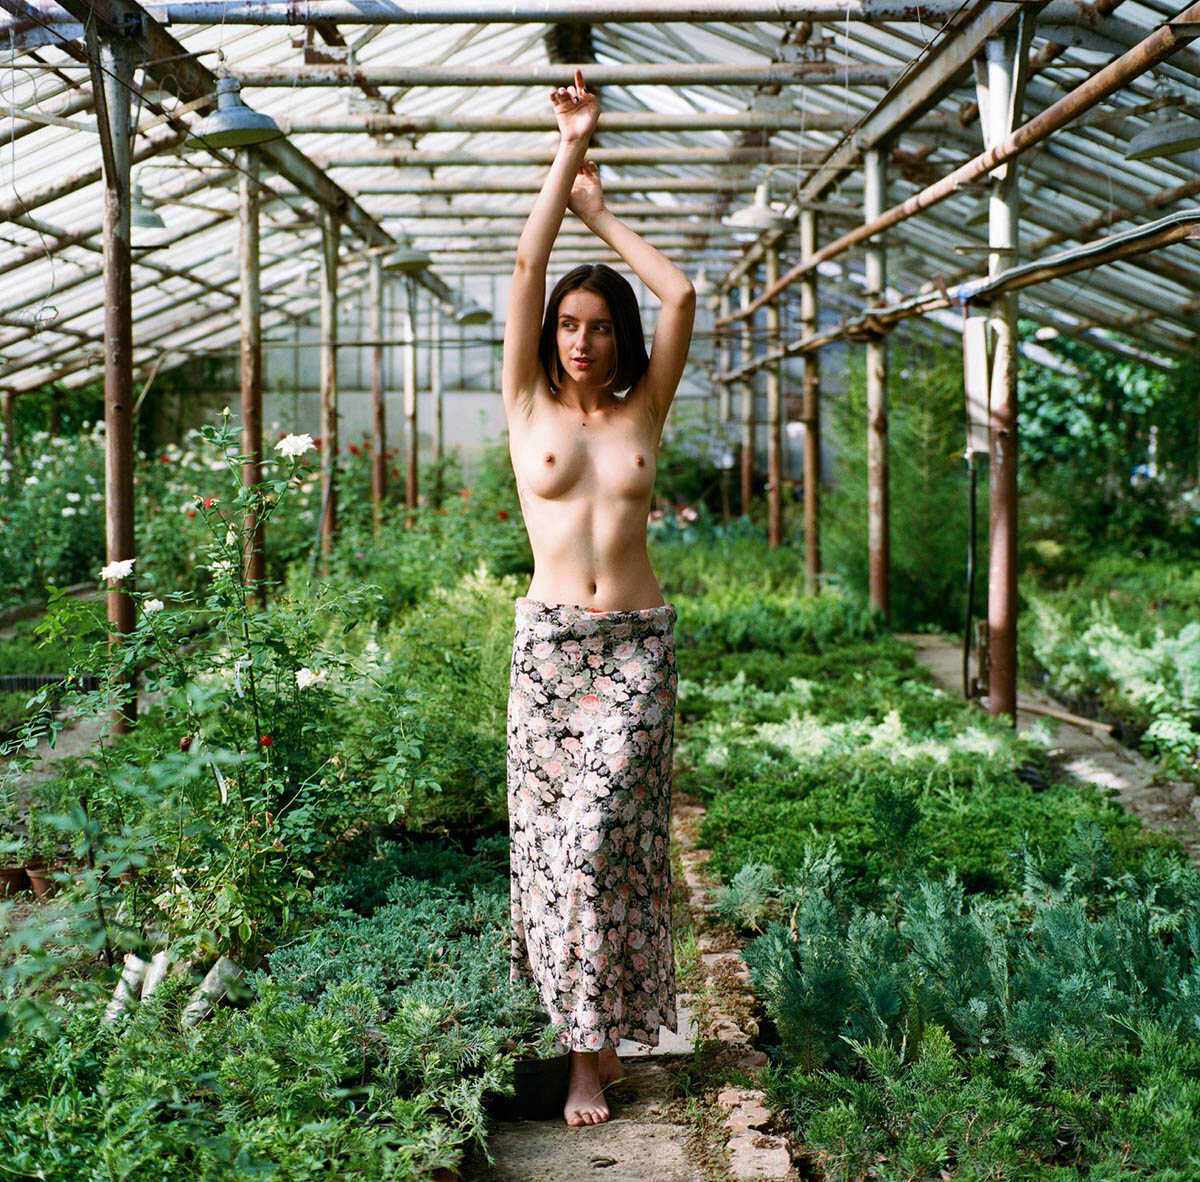 Η νεαρή μουνάρα μοντέλο Anastasia G σε γυμνές φωτογραφίες